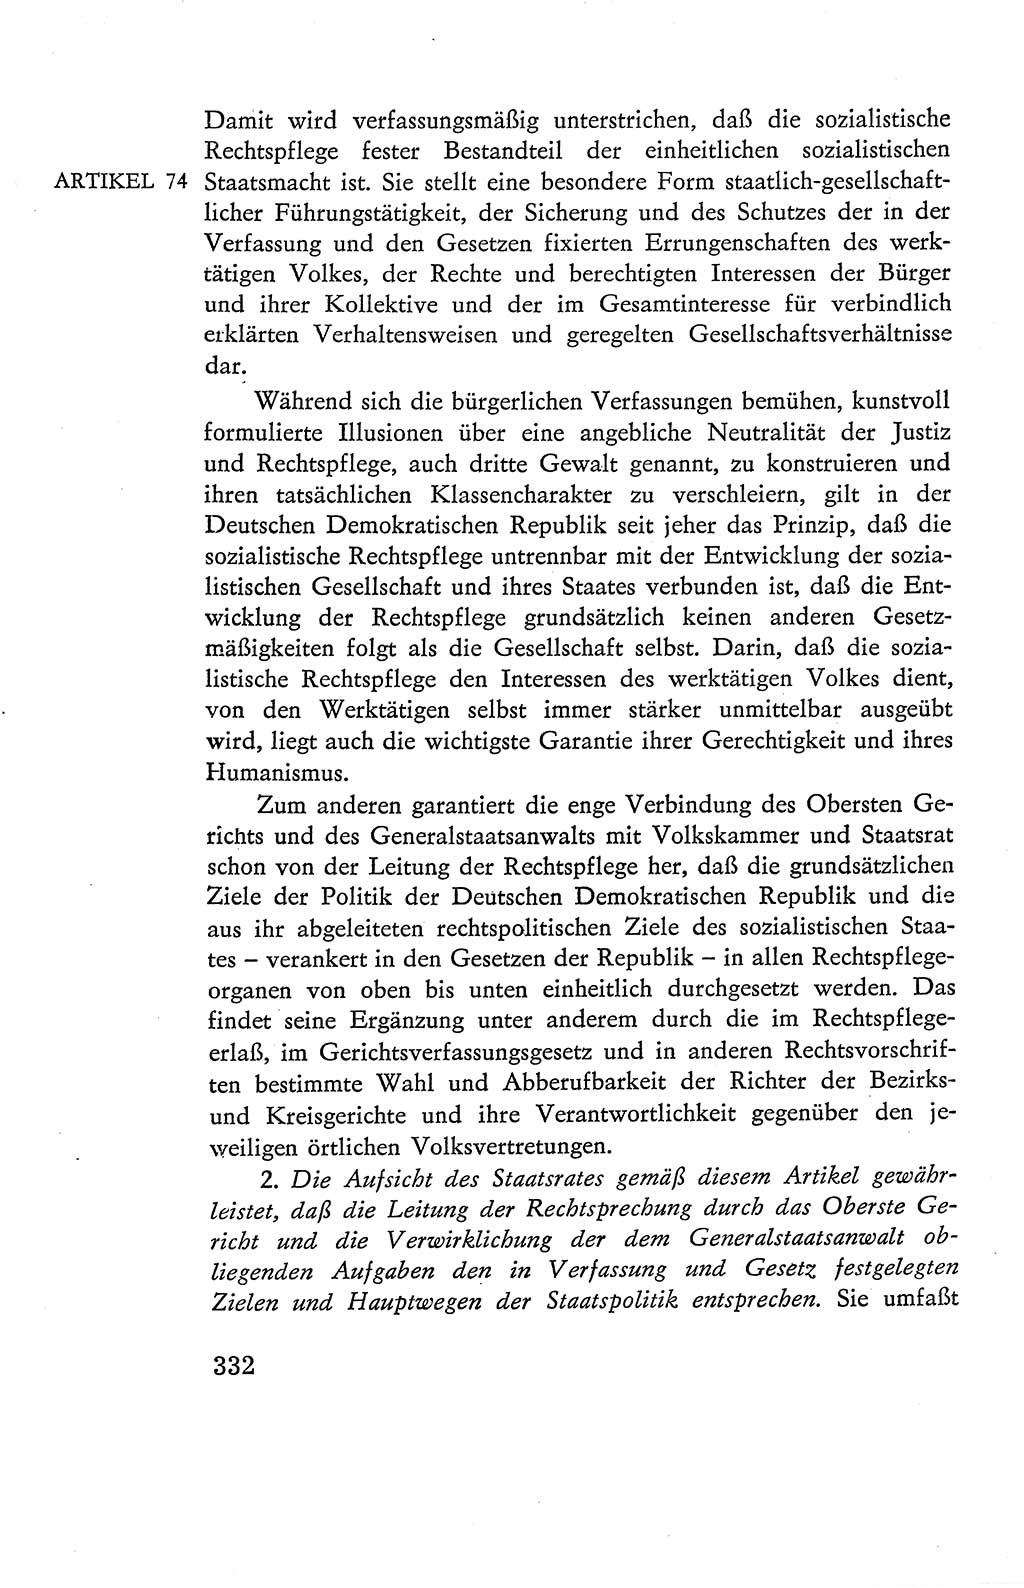 Verfassung der Deutschen Demokratischen Republik (DDR), Dokumente, Kommentar 1969, Band 2, Seite 332 (Verf. DDR Dok. Komm. 1969, Bd. 2, S. 332)